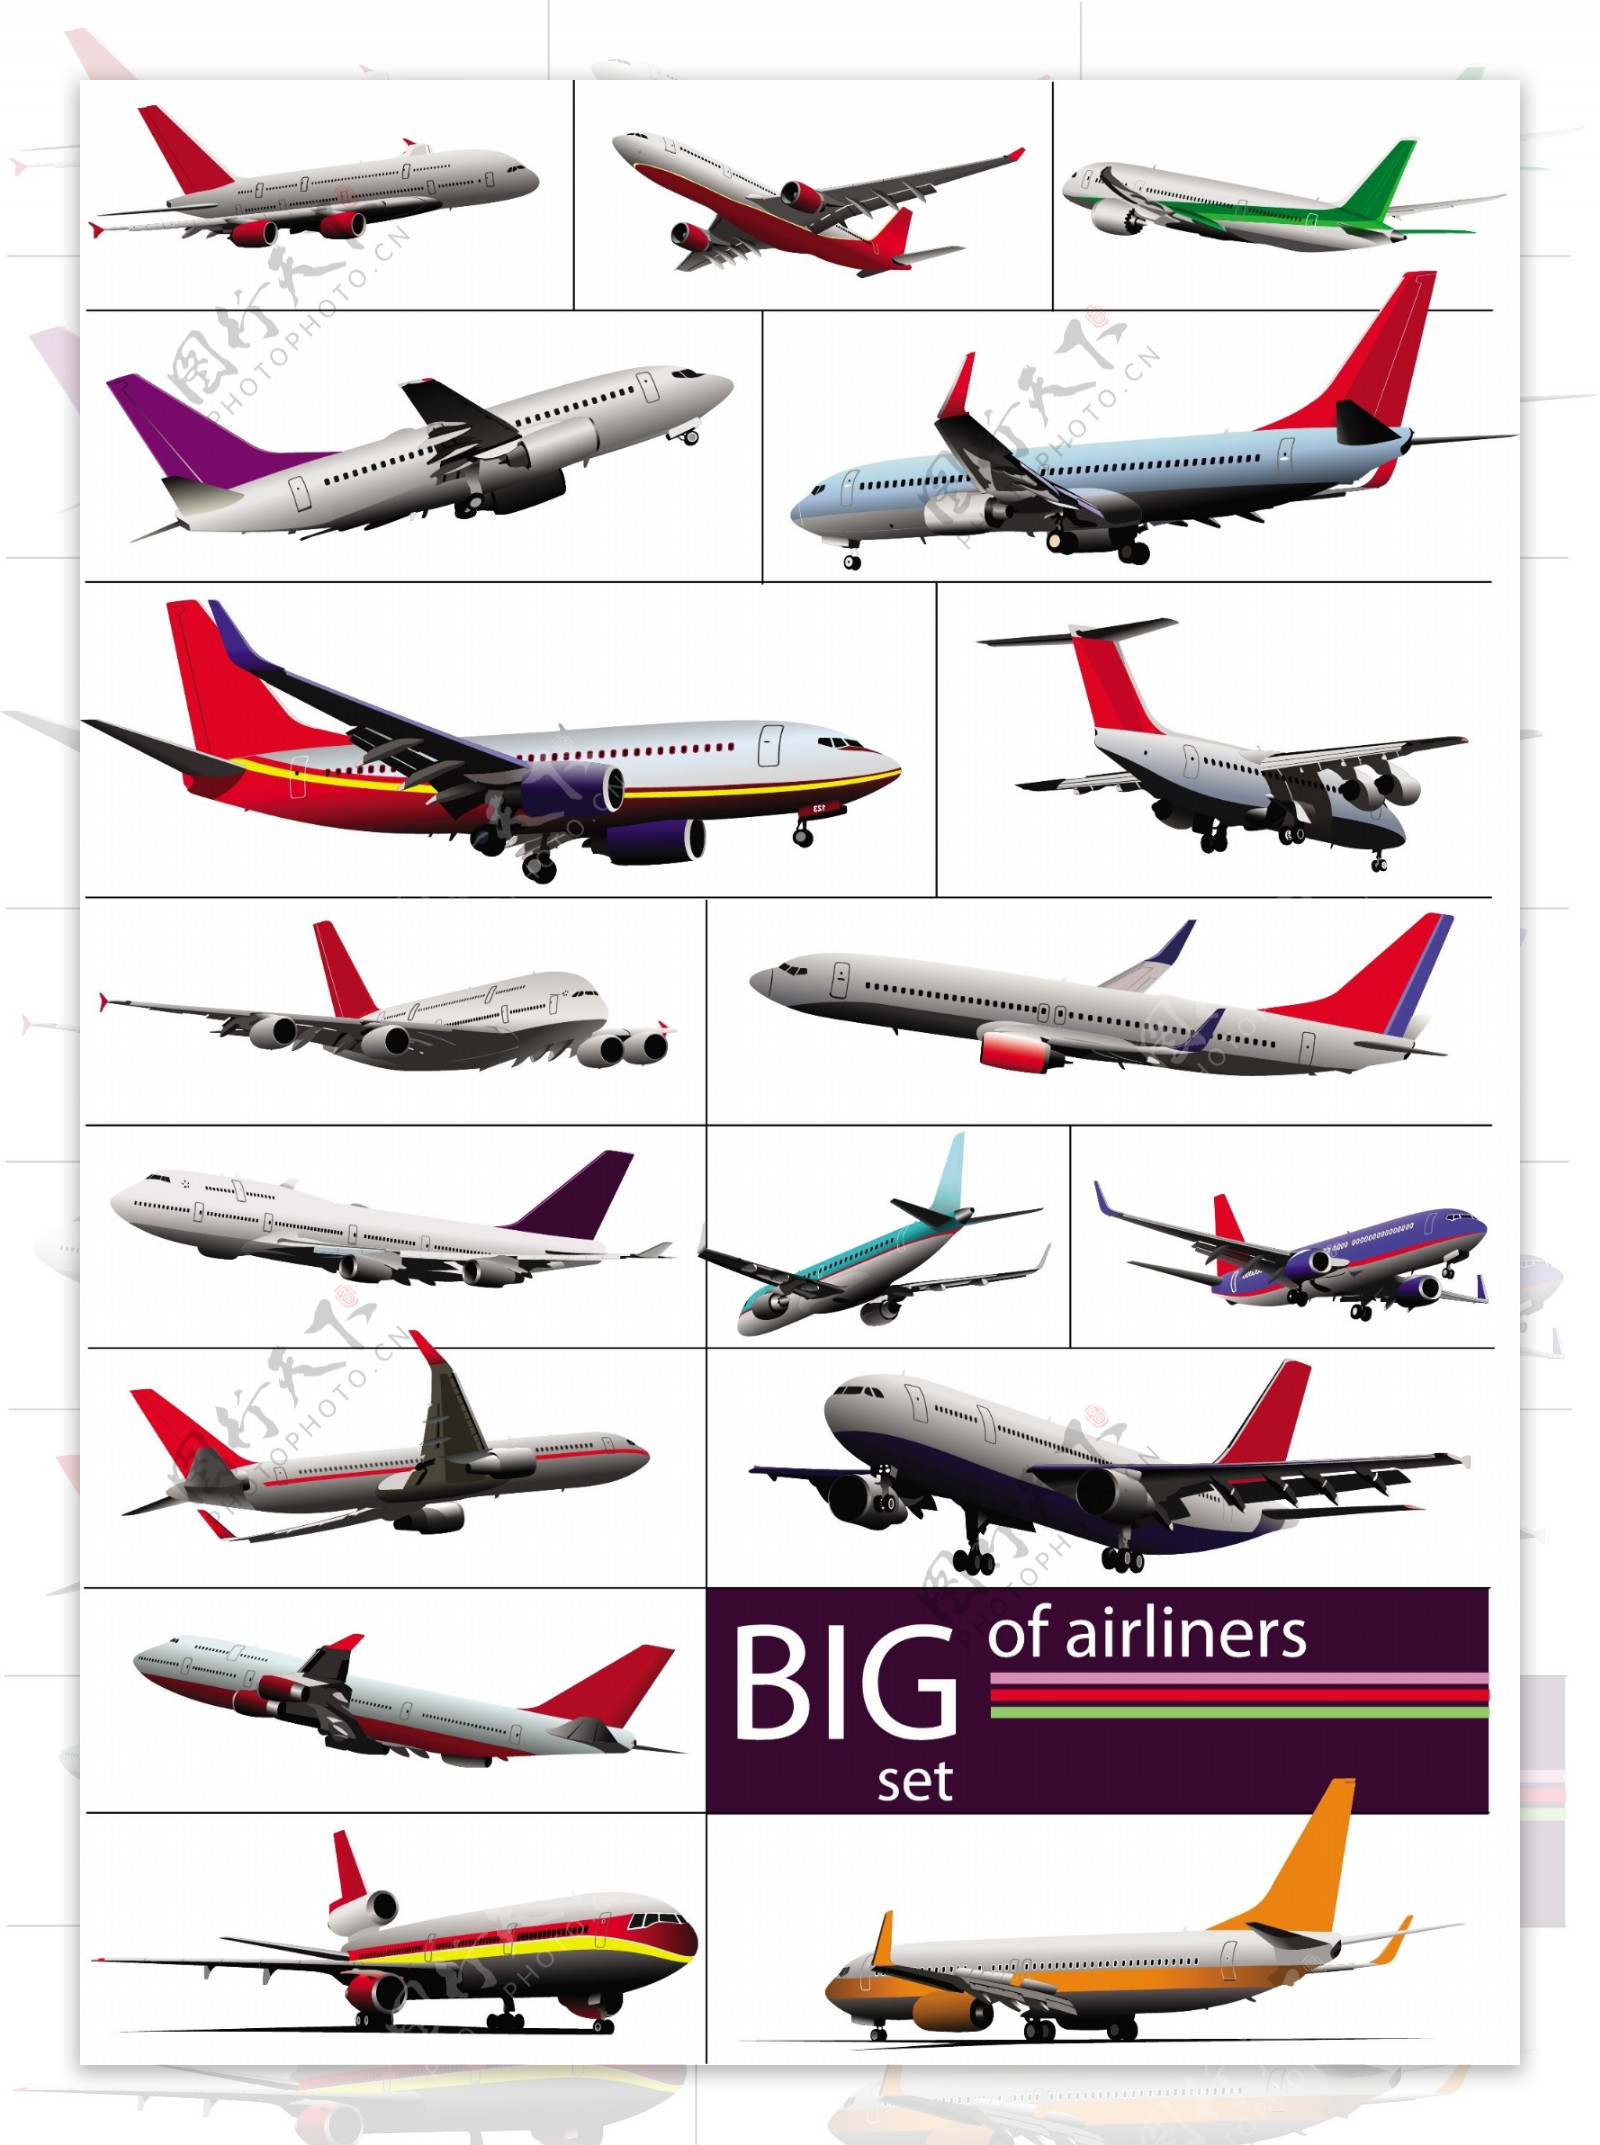 17款大型客机设计矢量素材